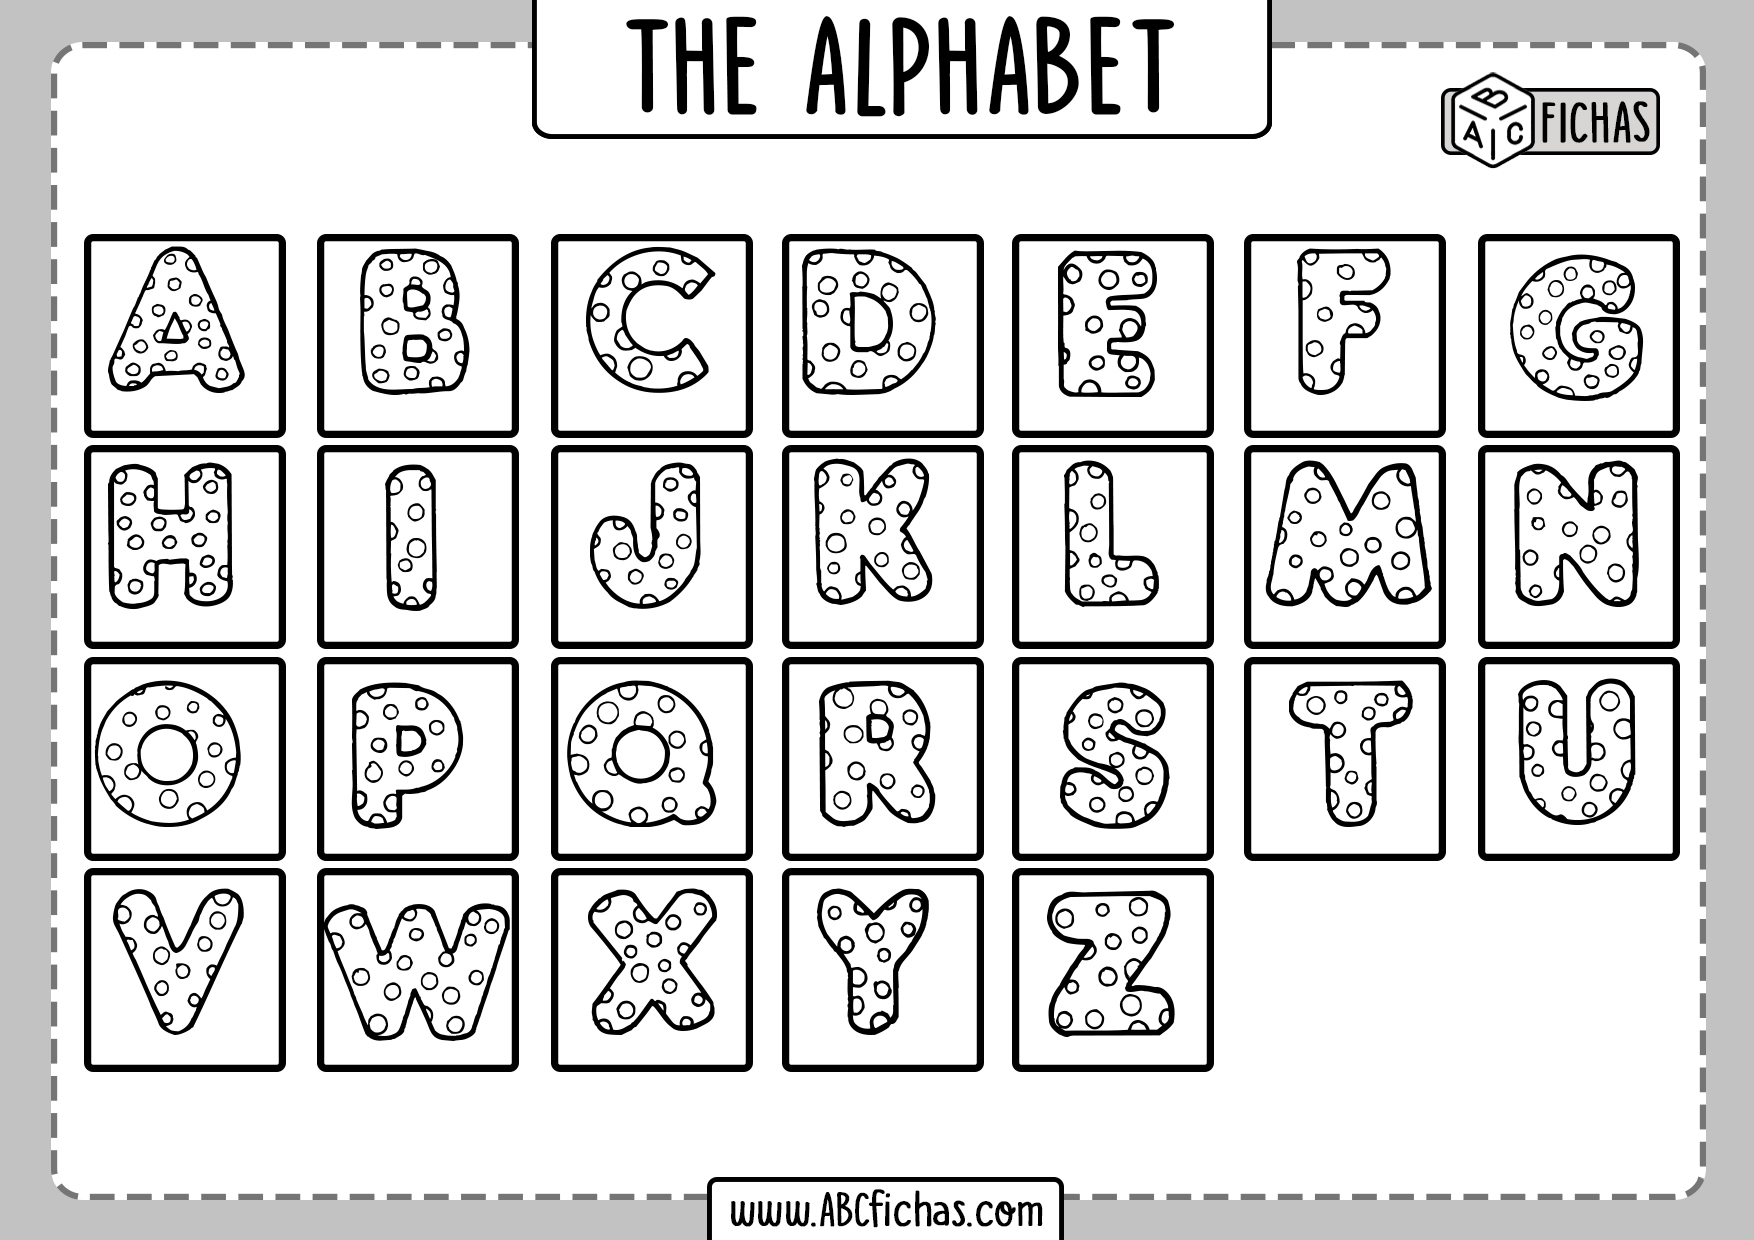 Alphabet Worksheet For Kids ABC Fichas